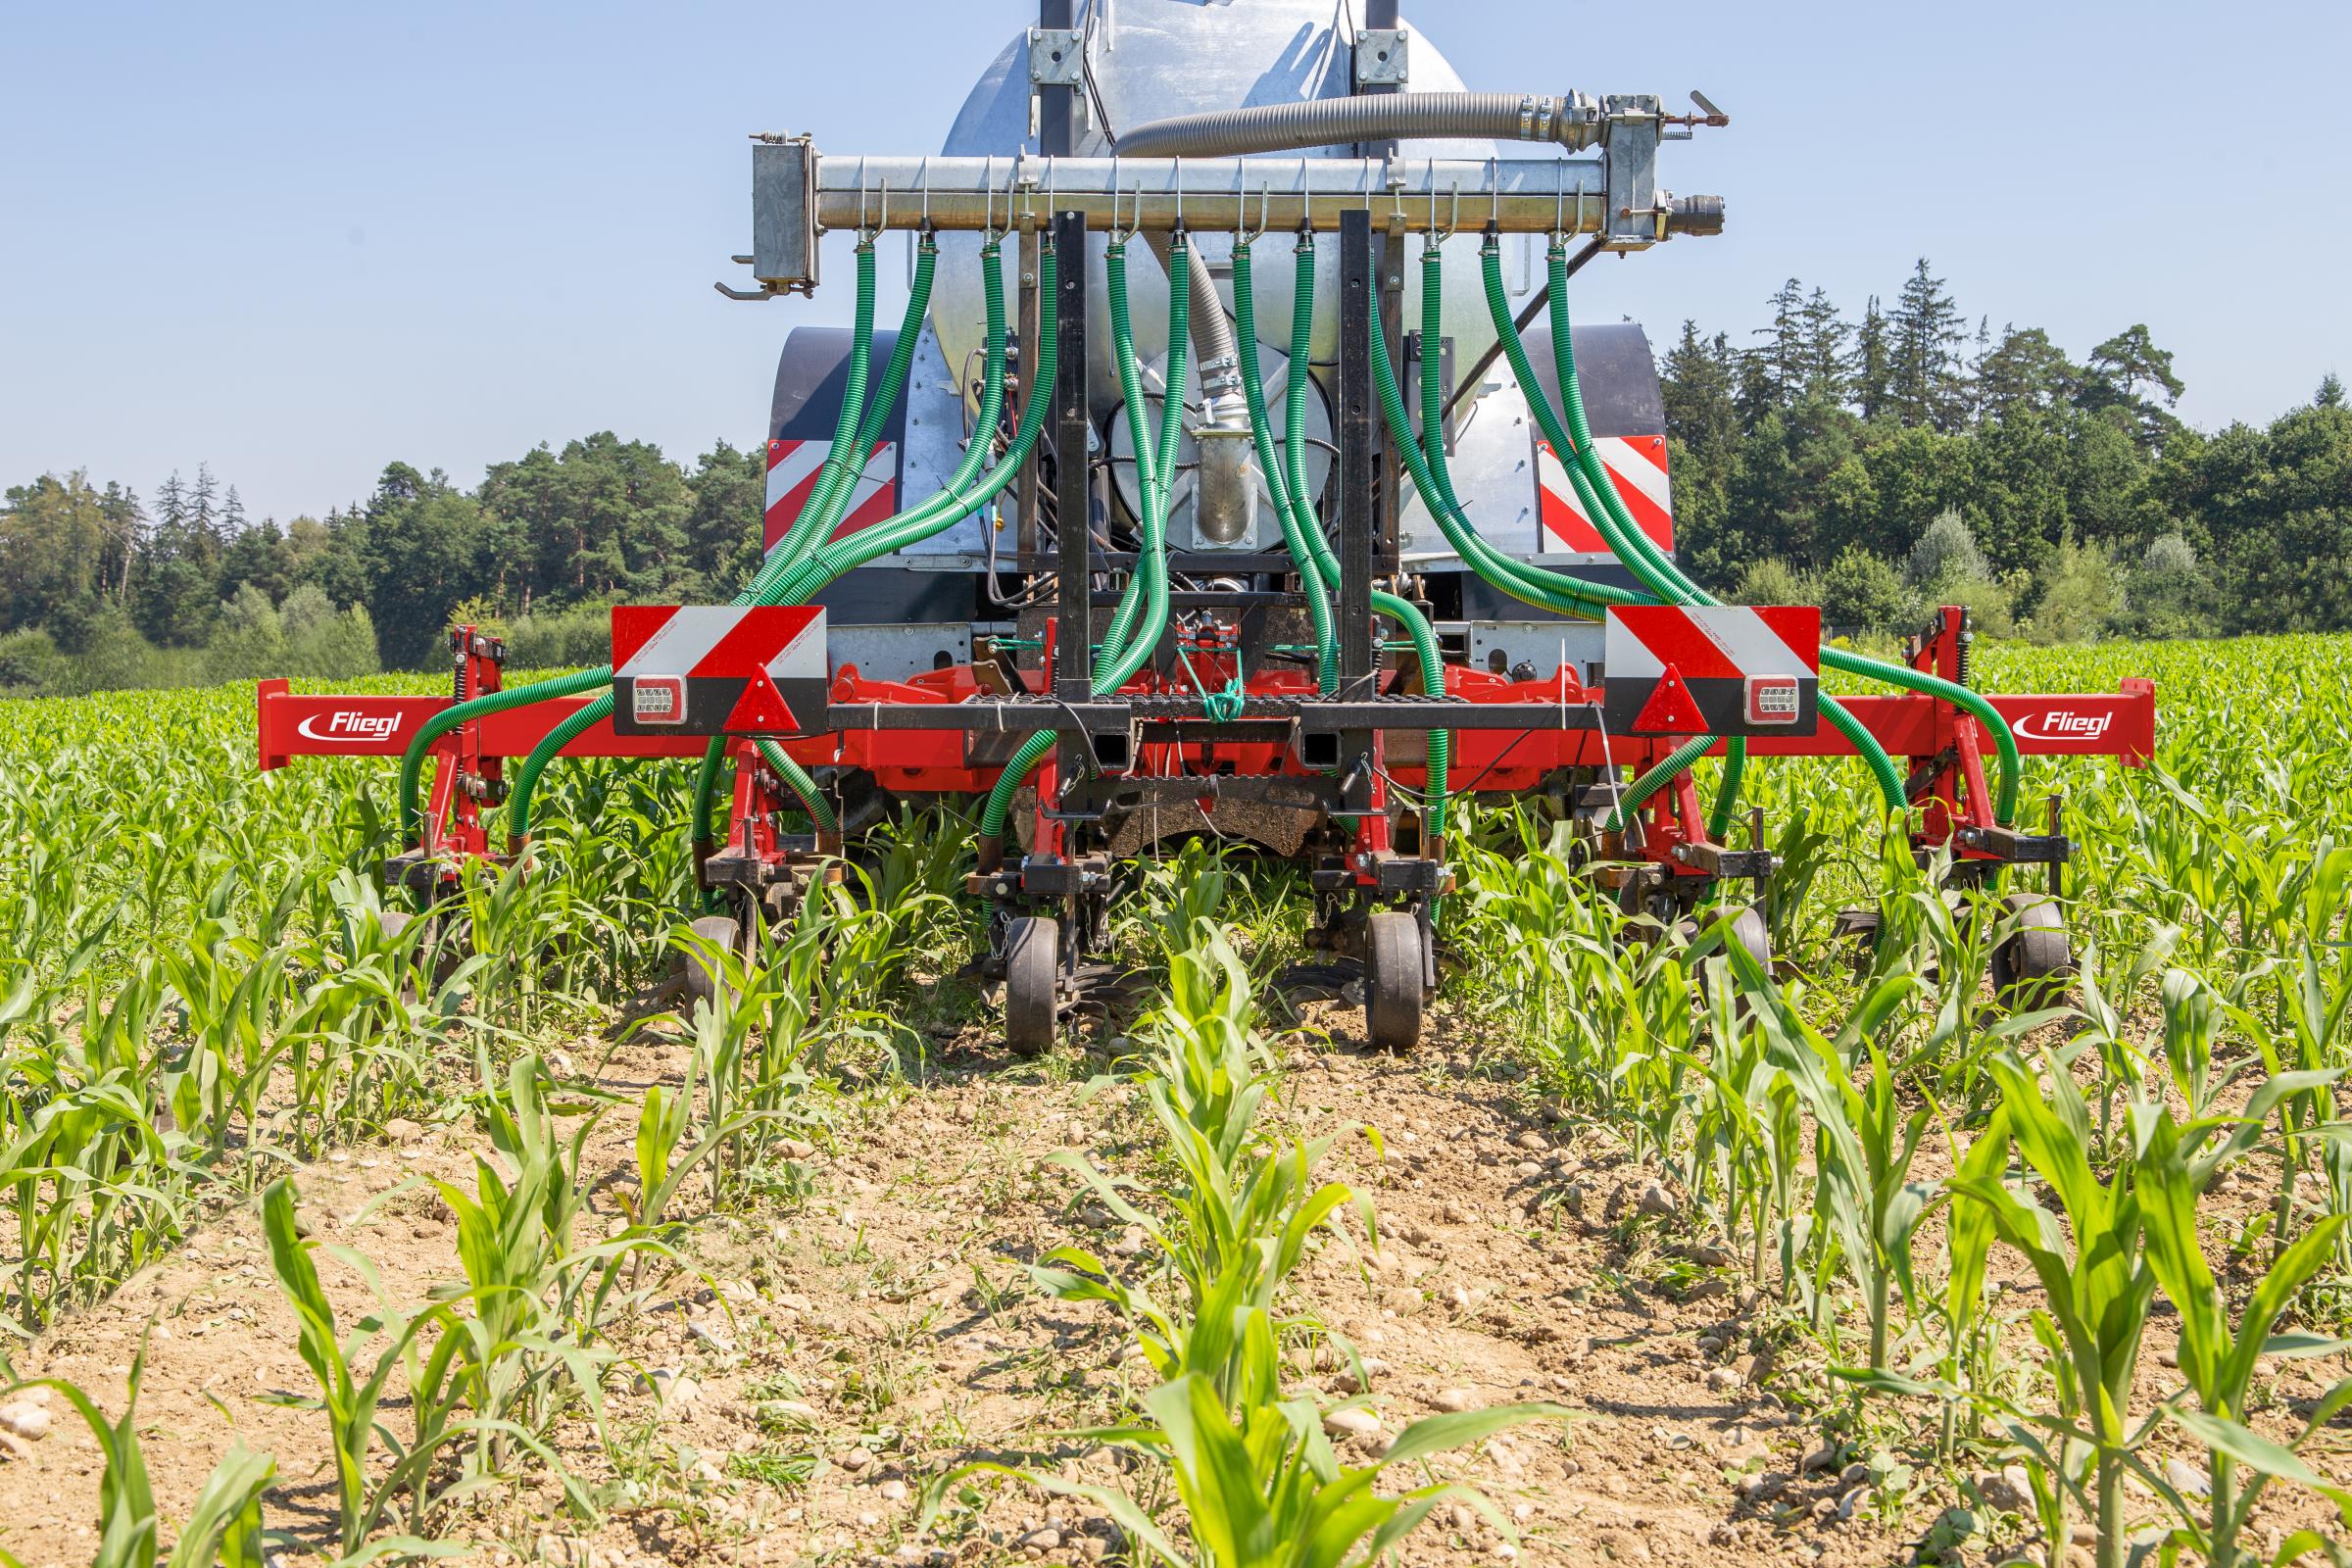 Fliegl Agrartechnik from Germany has developed its new Dexter fertilizer hoeing machine 